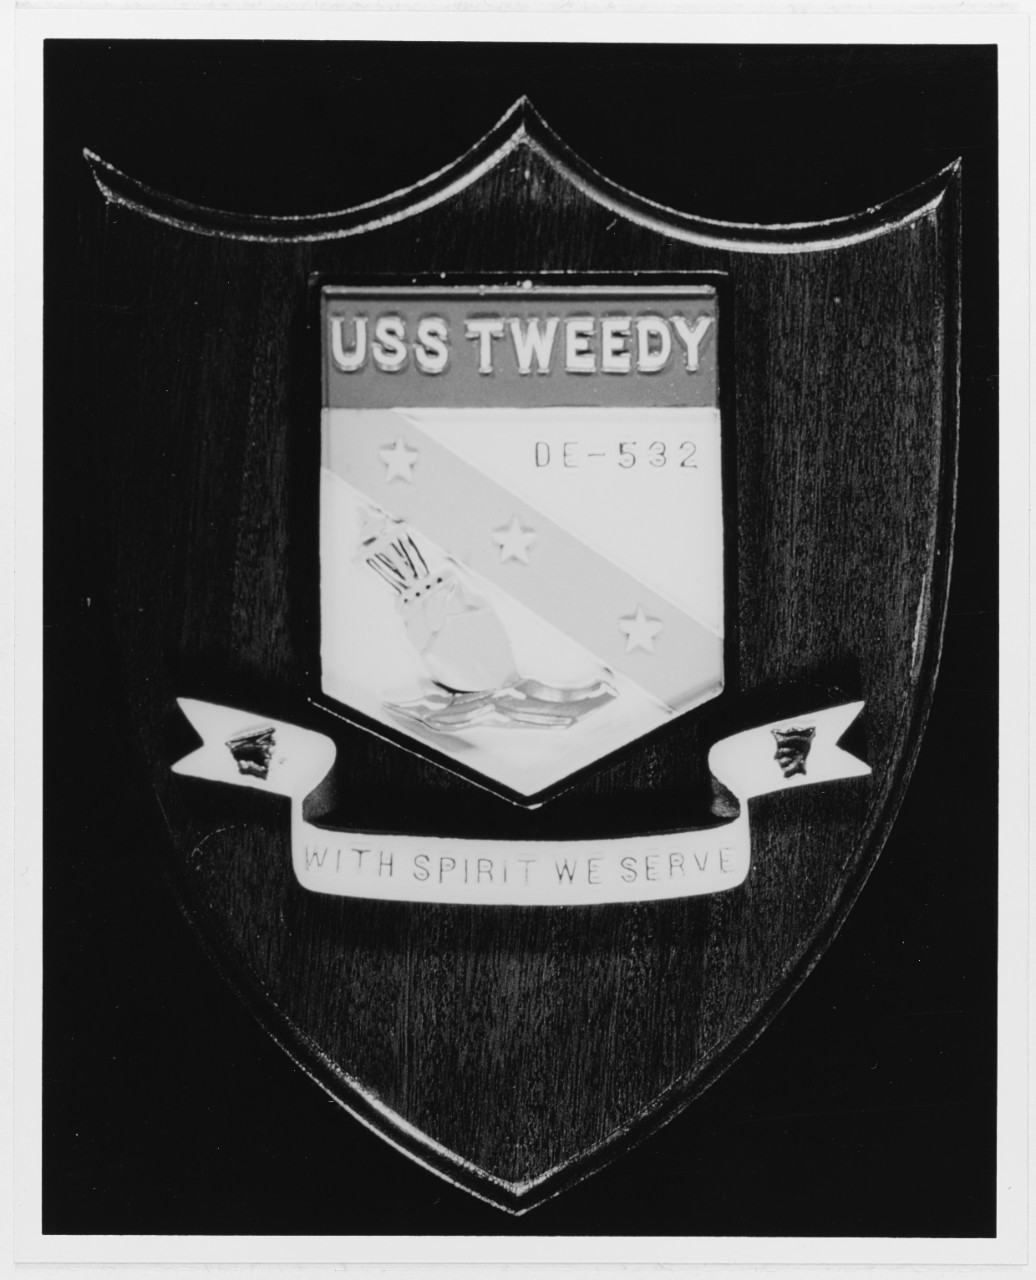 Insignia:  USS TWEEDY (DE-532)